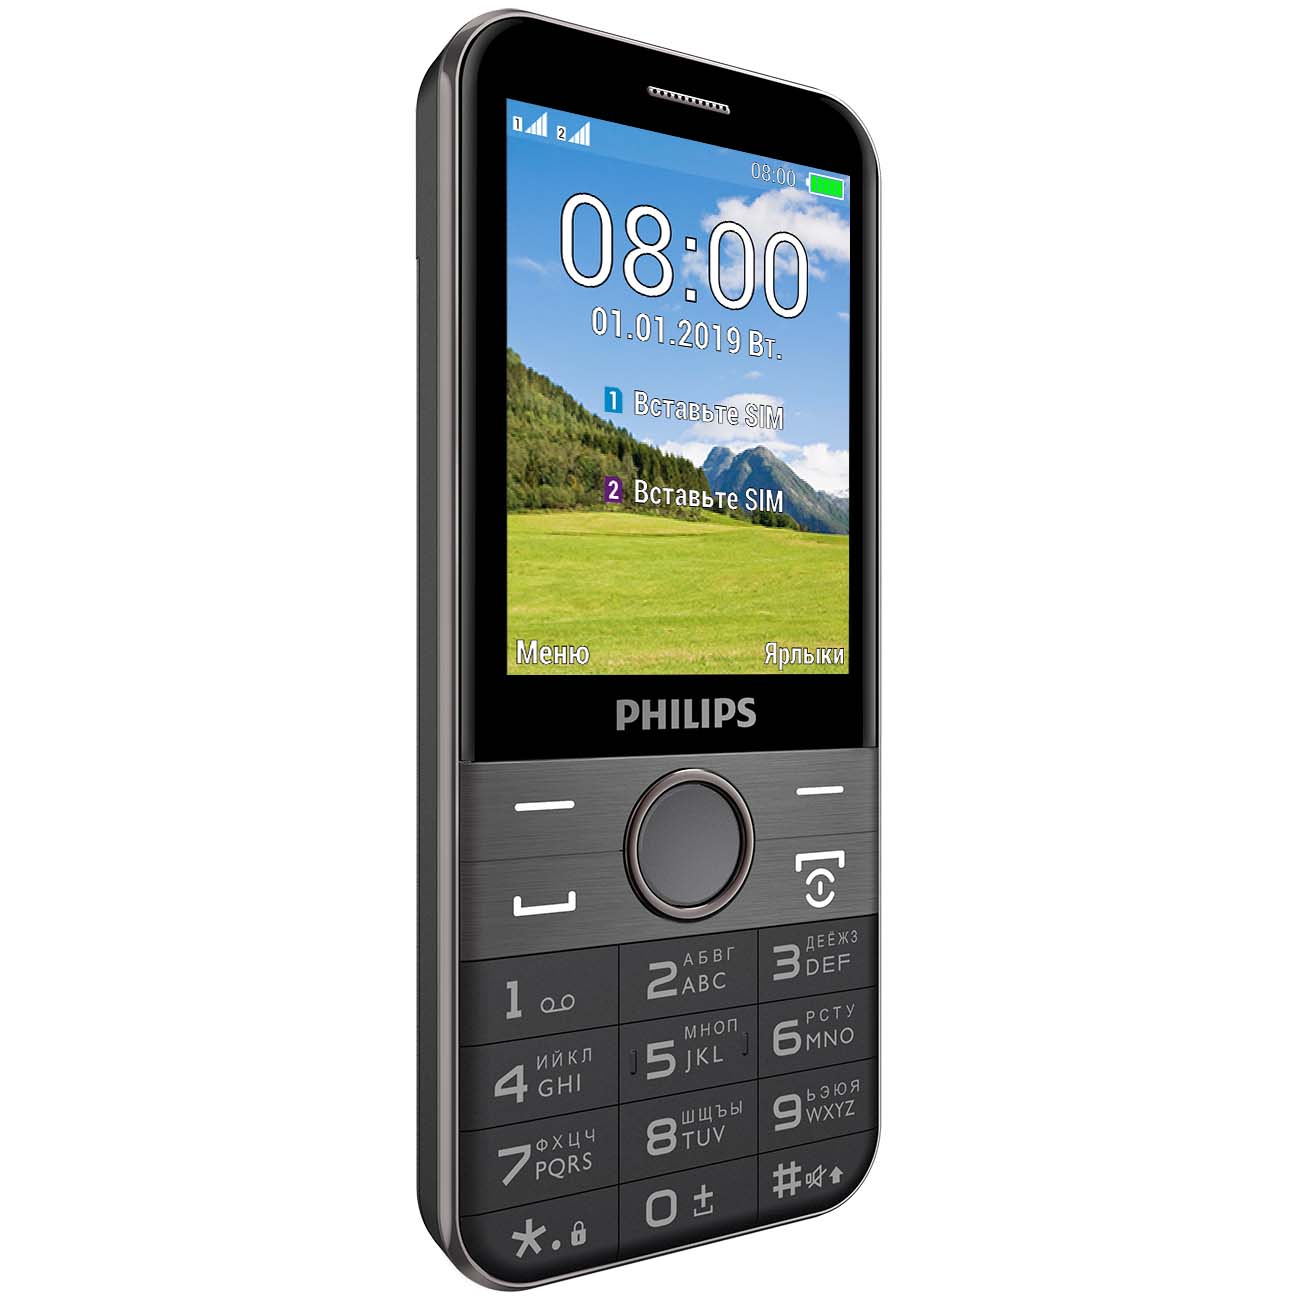 Philips Xenium e580. Philips Xenium e590. Philips Xenium e111. Philips Xenium e335.